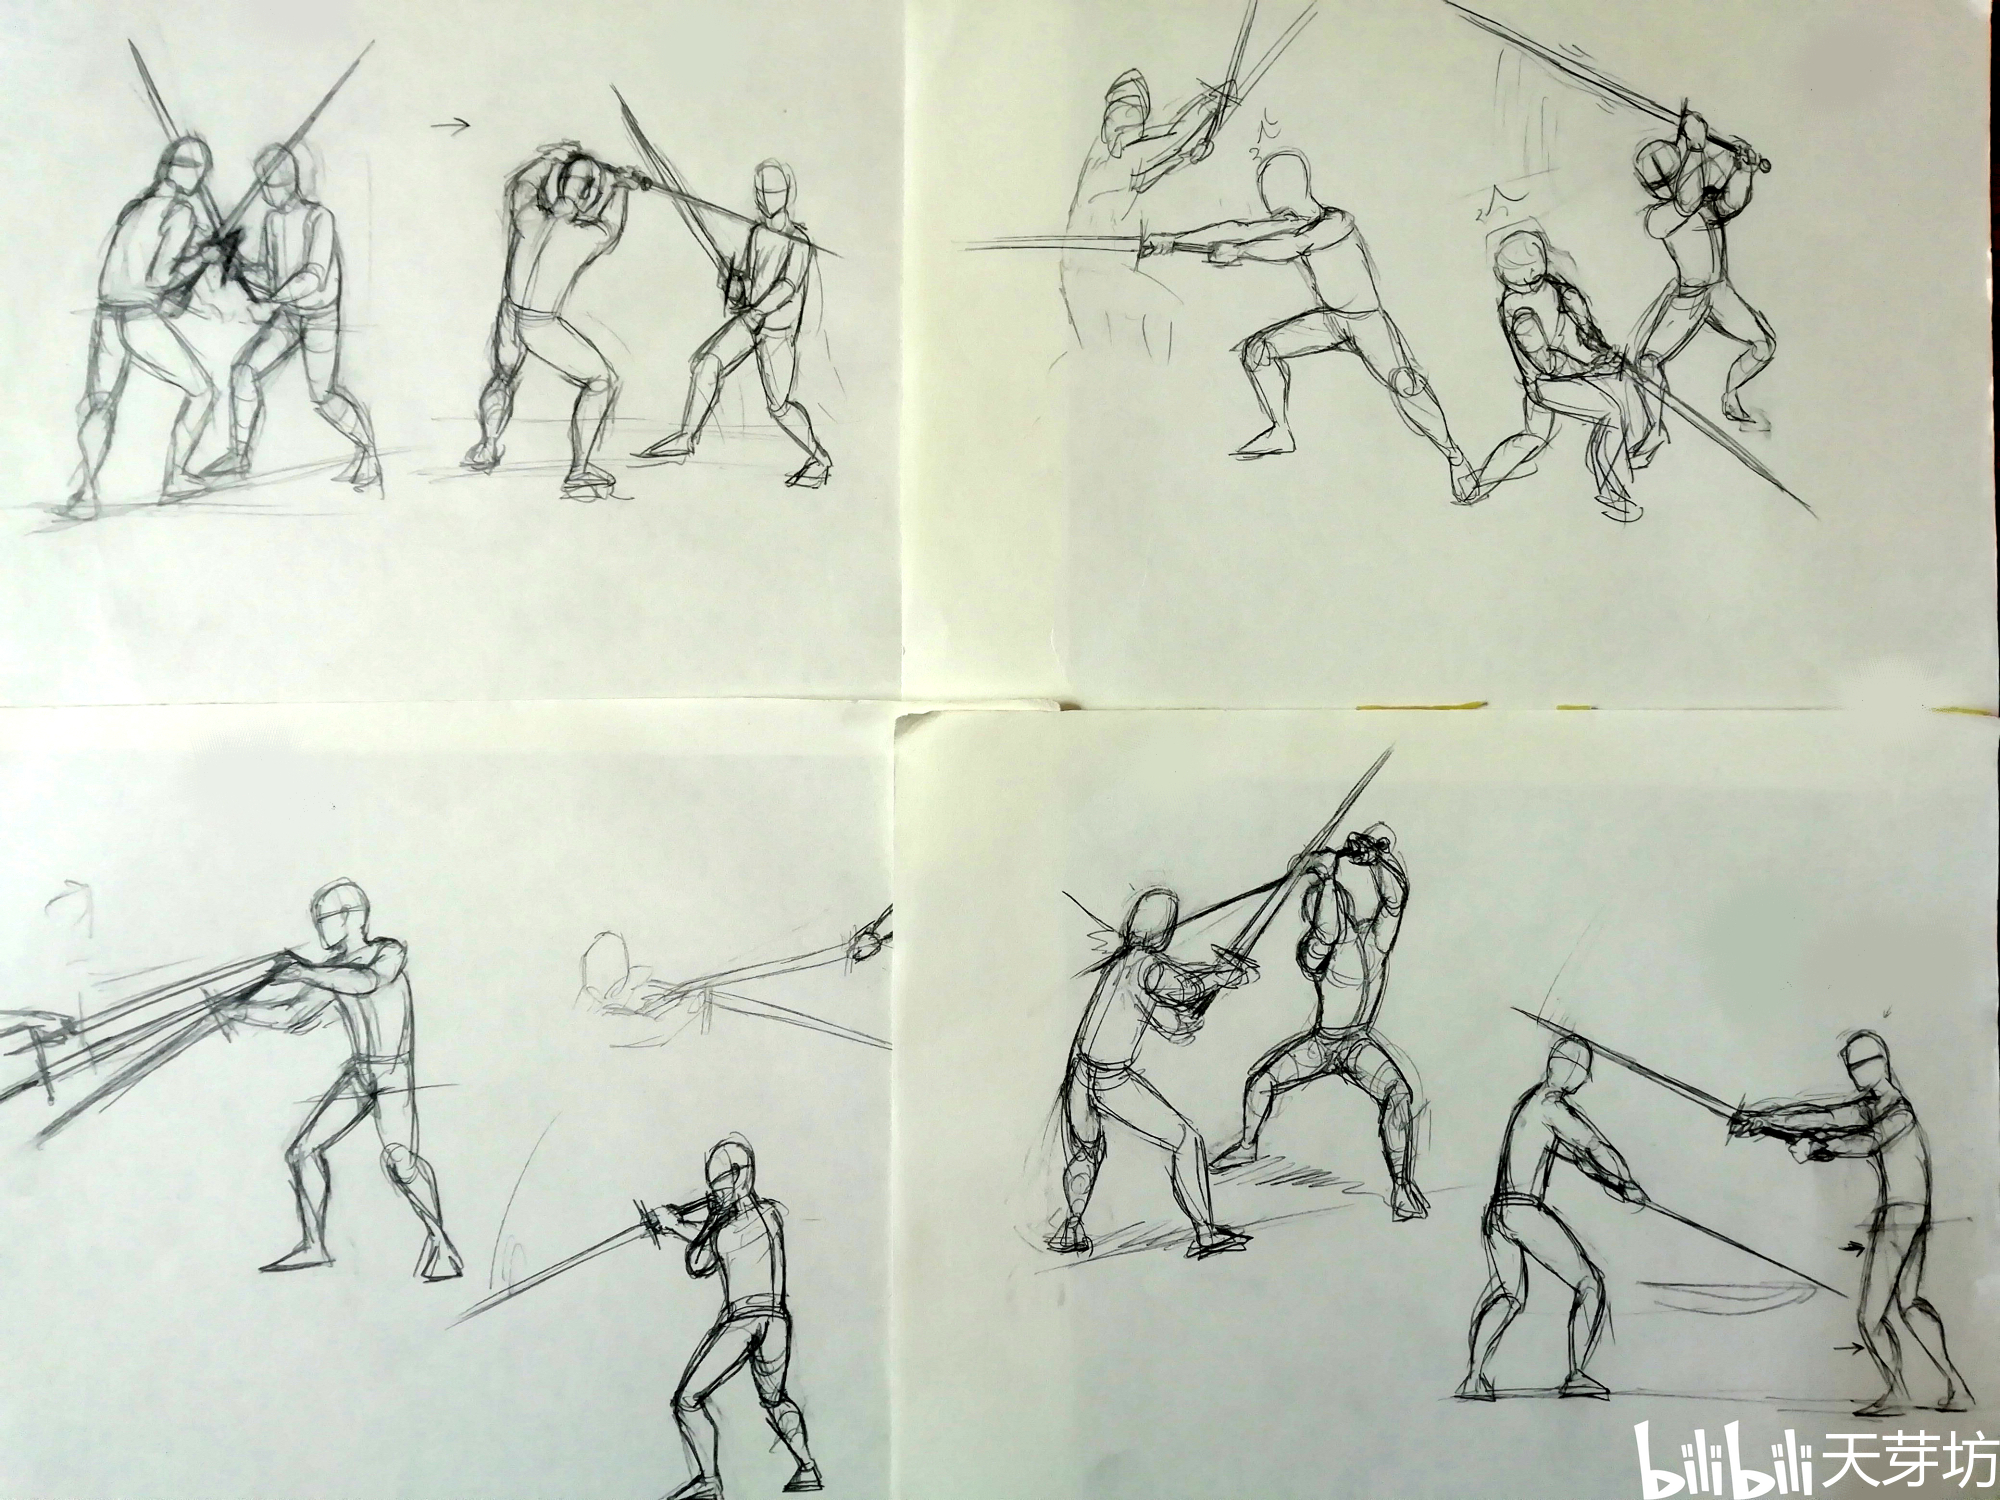 【武术漫画】(中国)剑,剑道第二弹,新欧剑与老欧剑,绳镖,双钩等